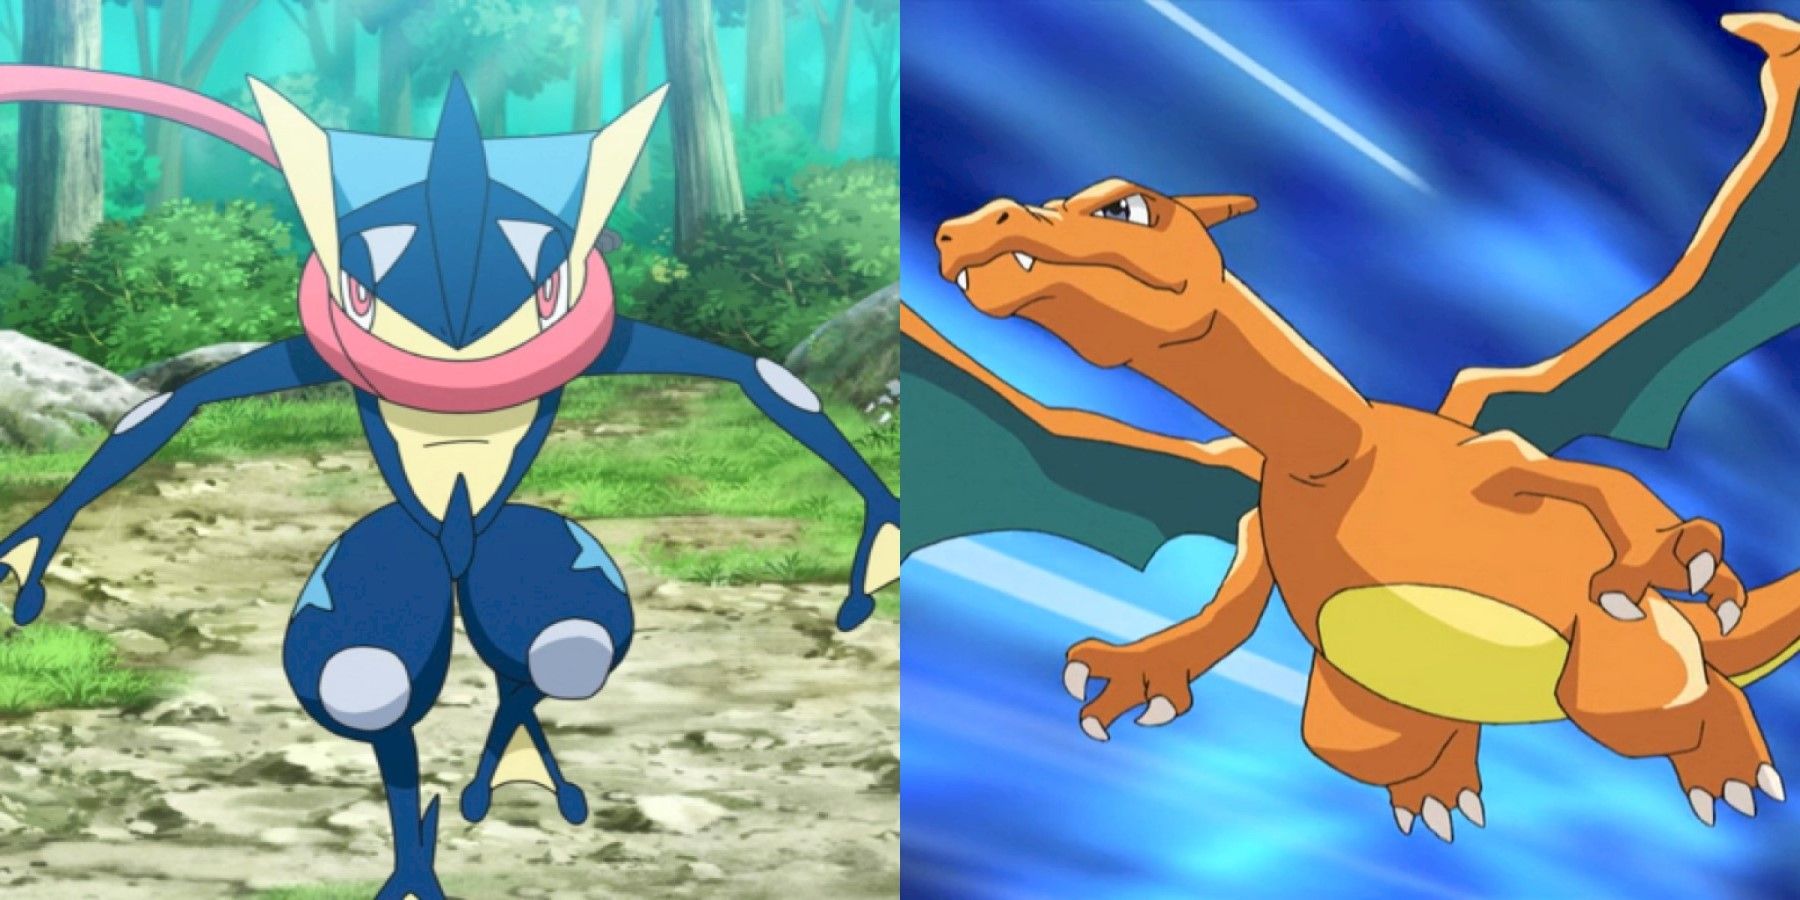 Charizard ou Greninja? Qual deles foi o Pokémon mais forte de Ash?